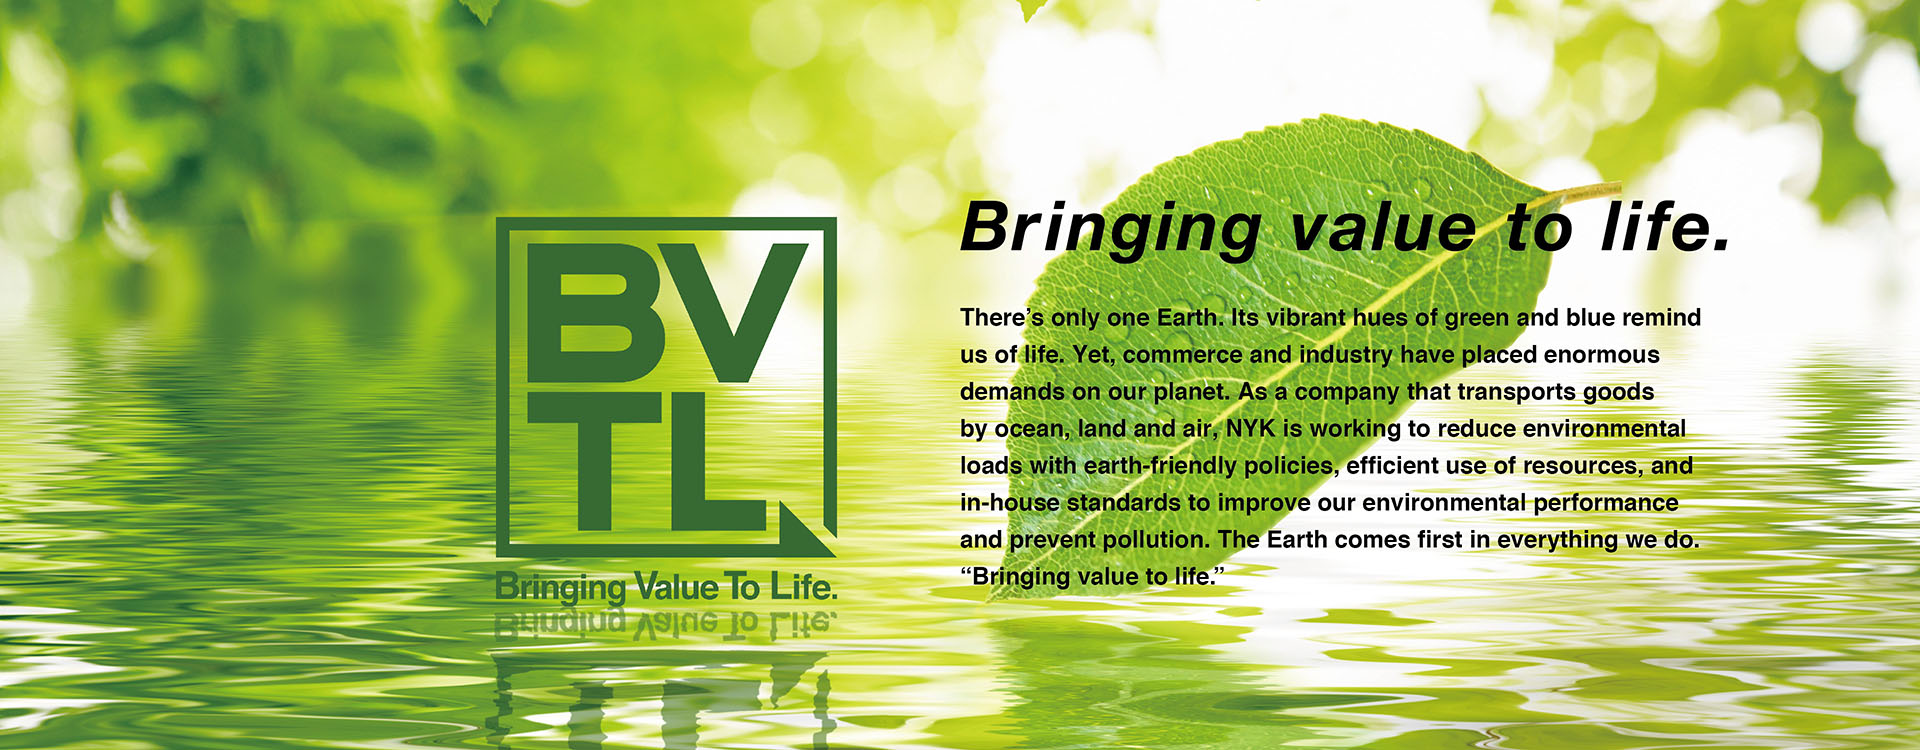 BVTL Bringing value to life.